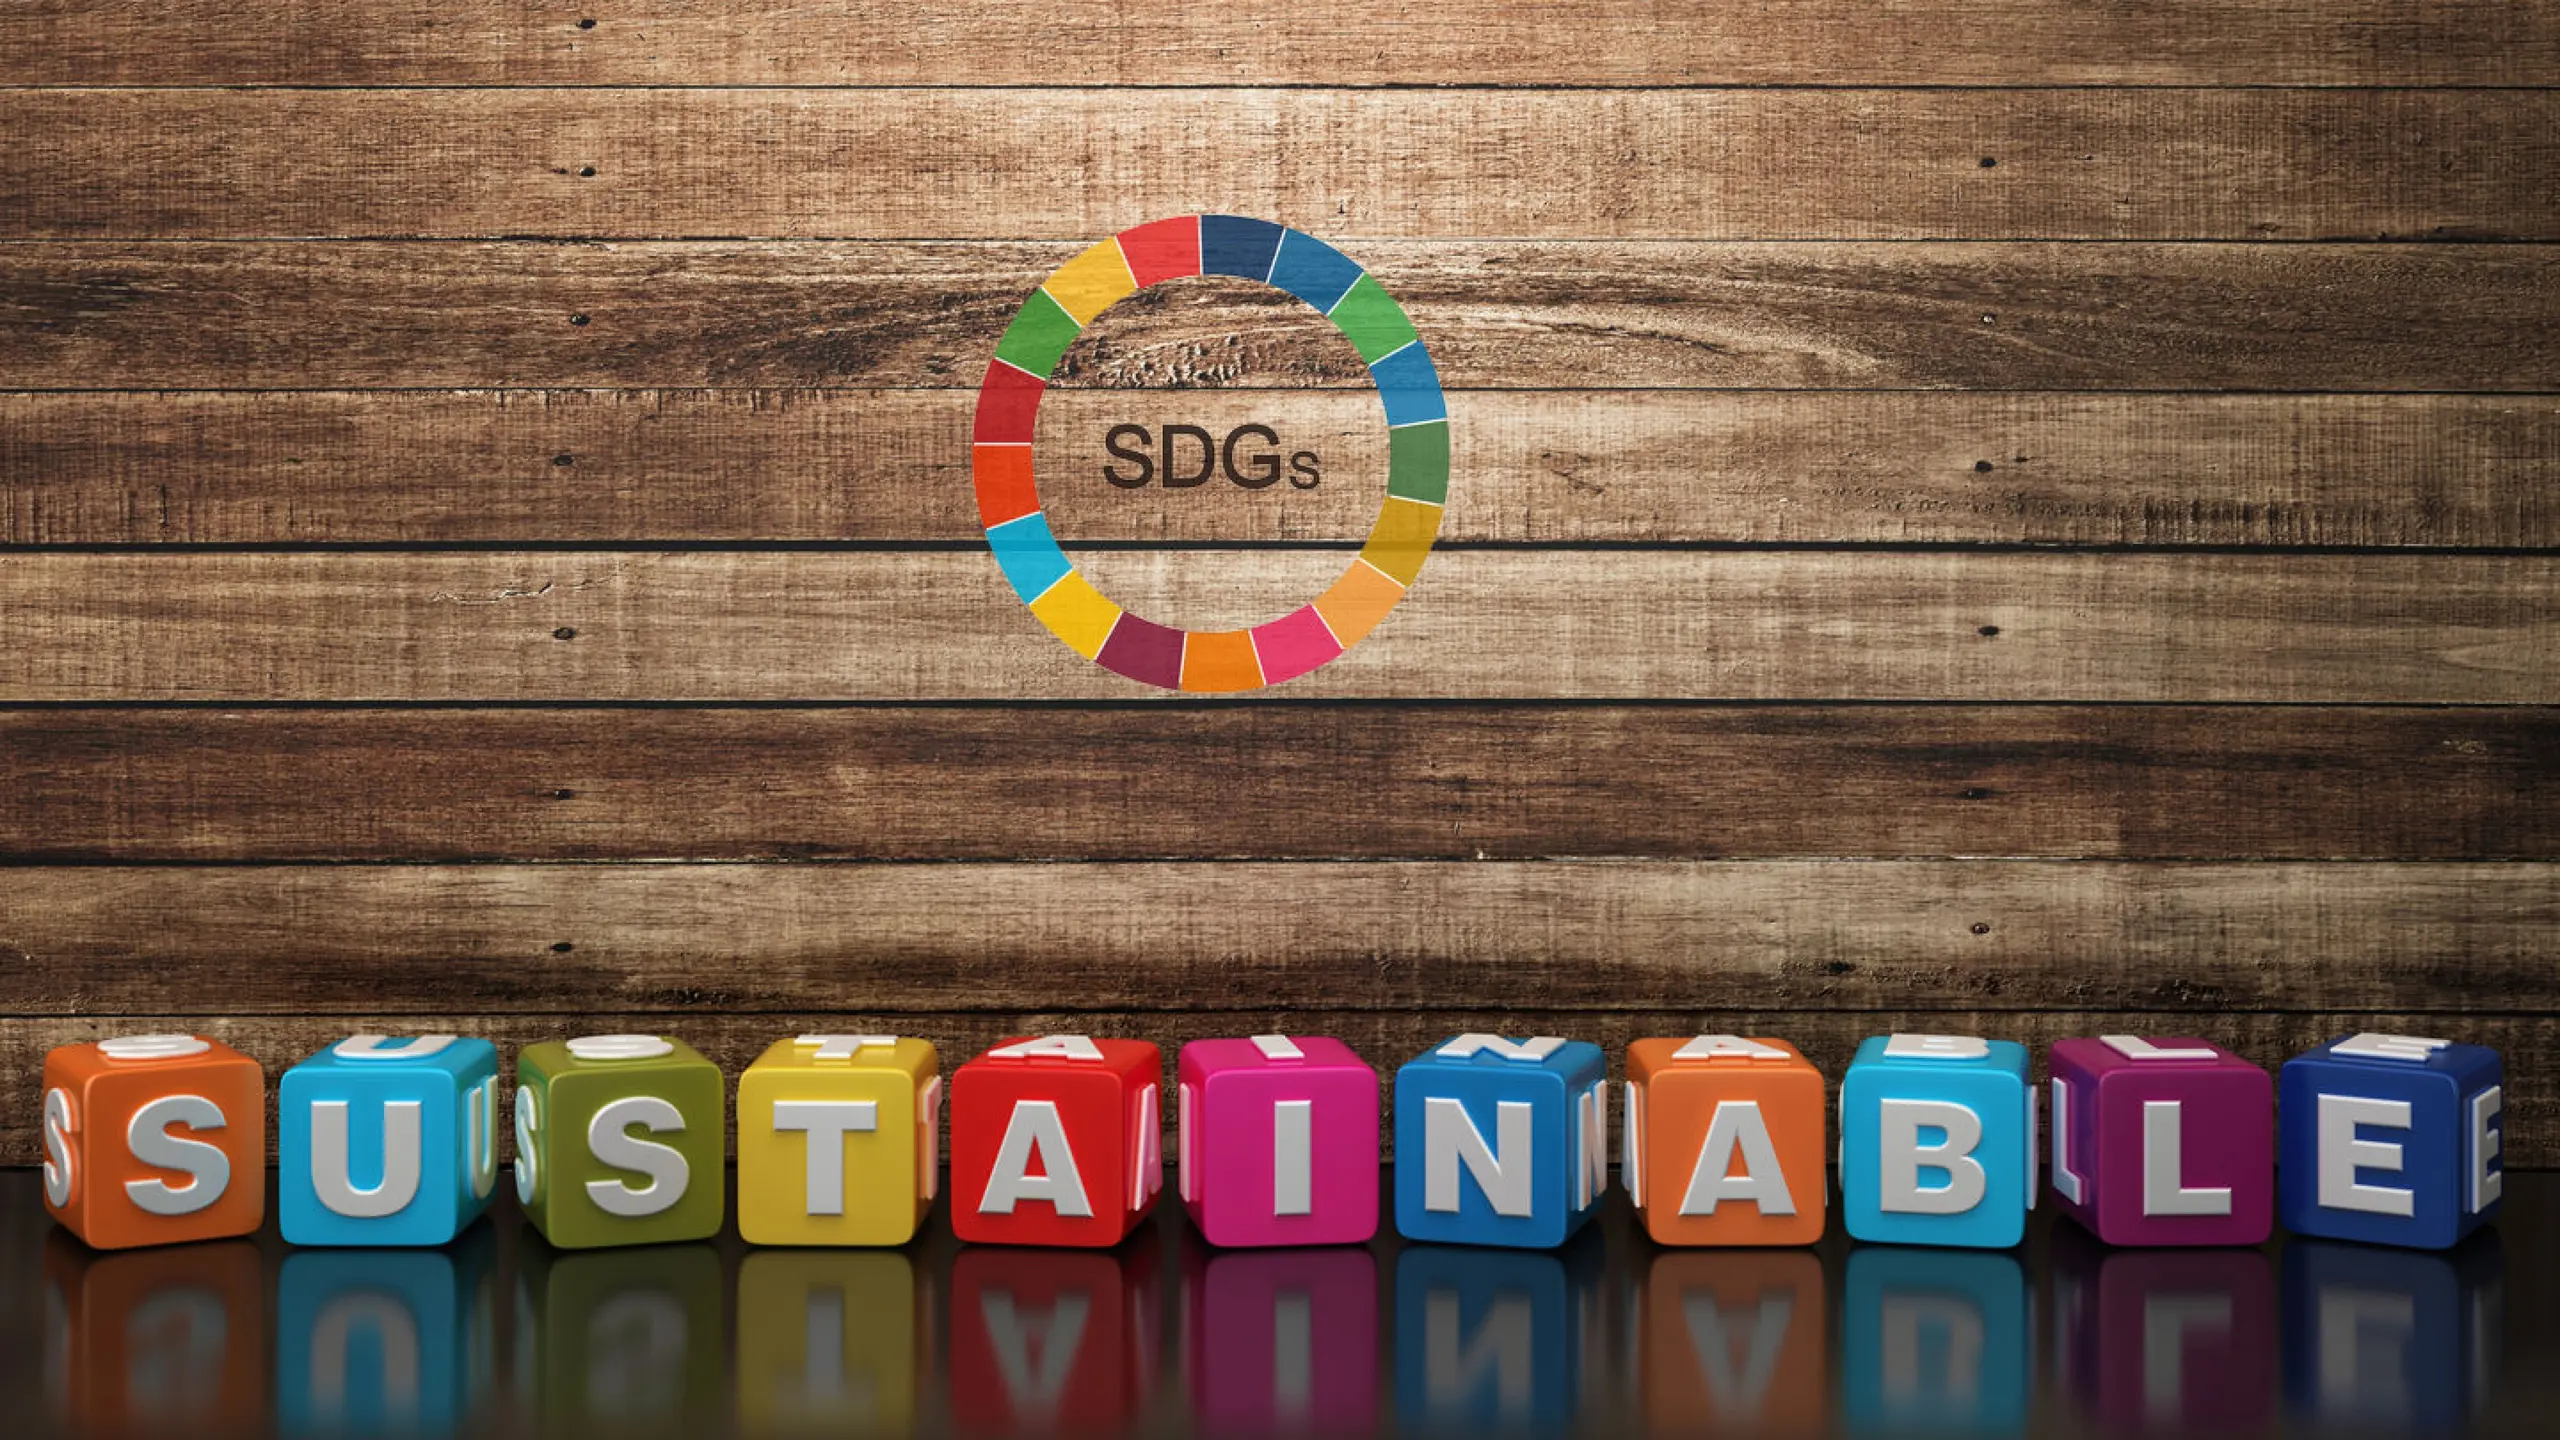 Sustainabele Development Goals der UN